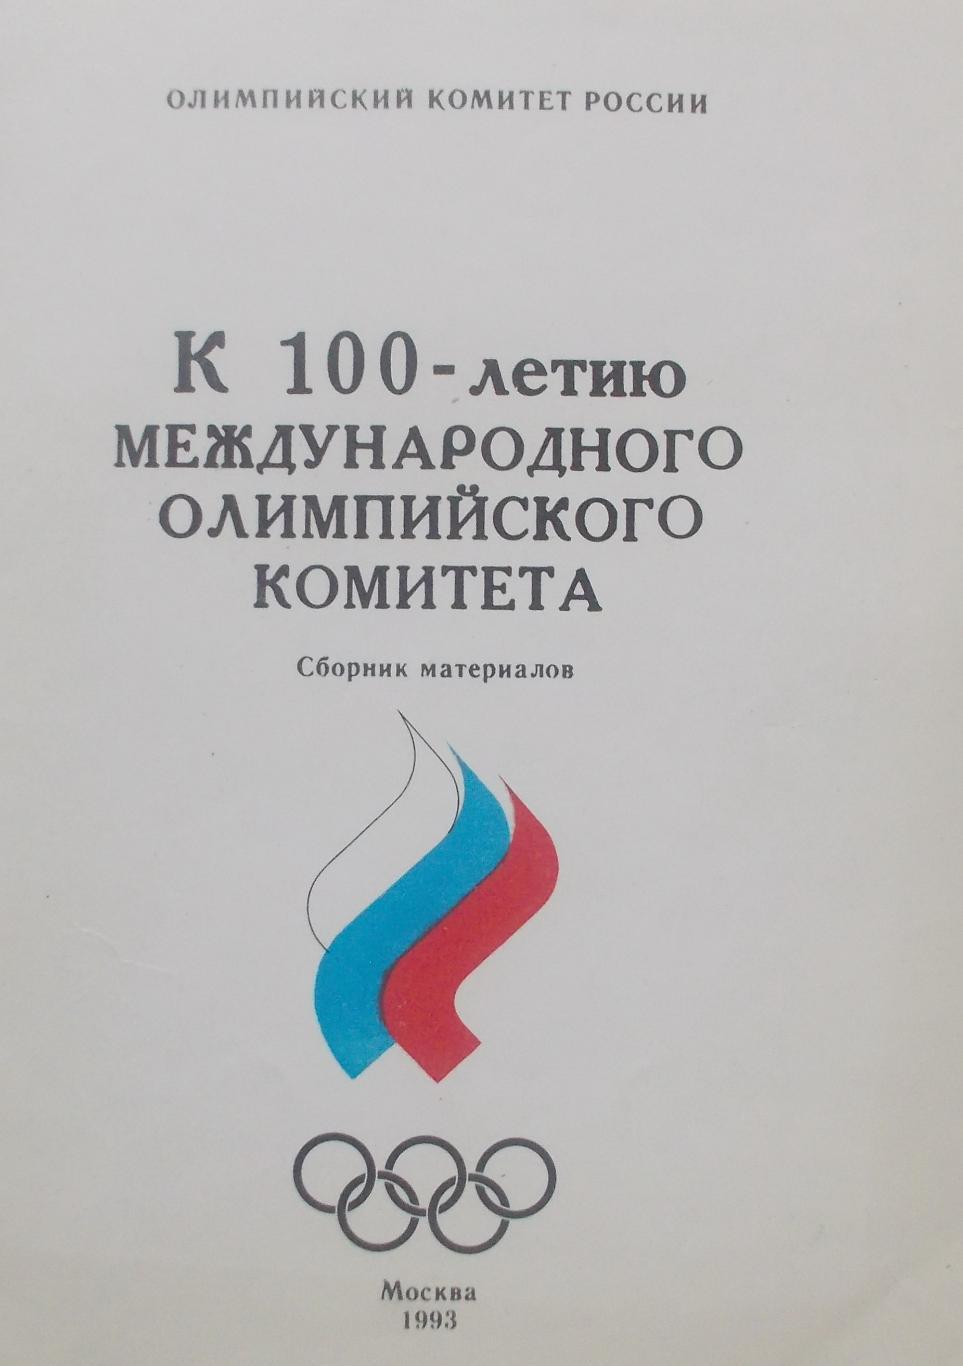 1993. К 100-летию международного Олимпийского Комитета. Москва